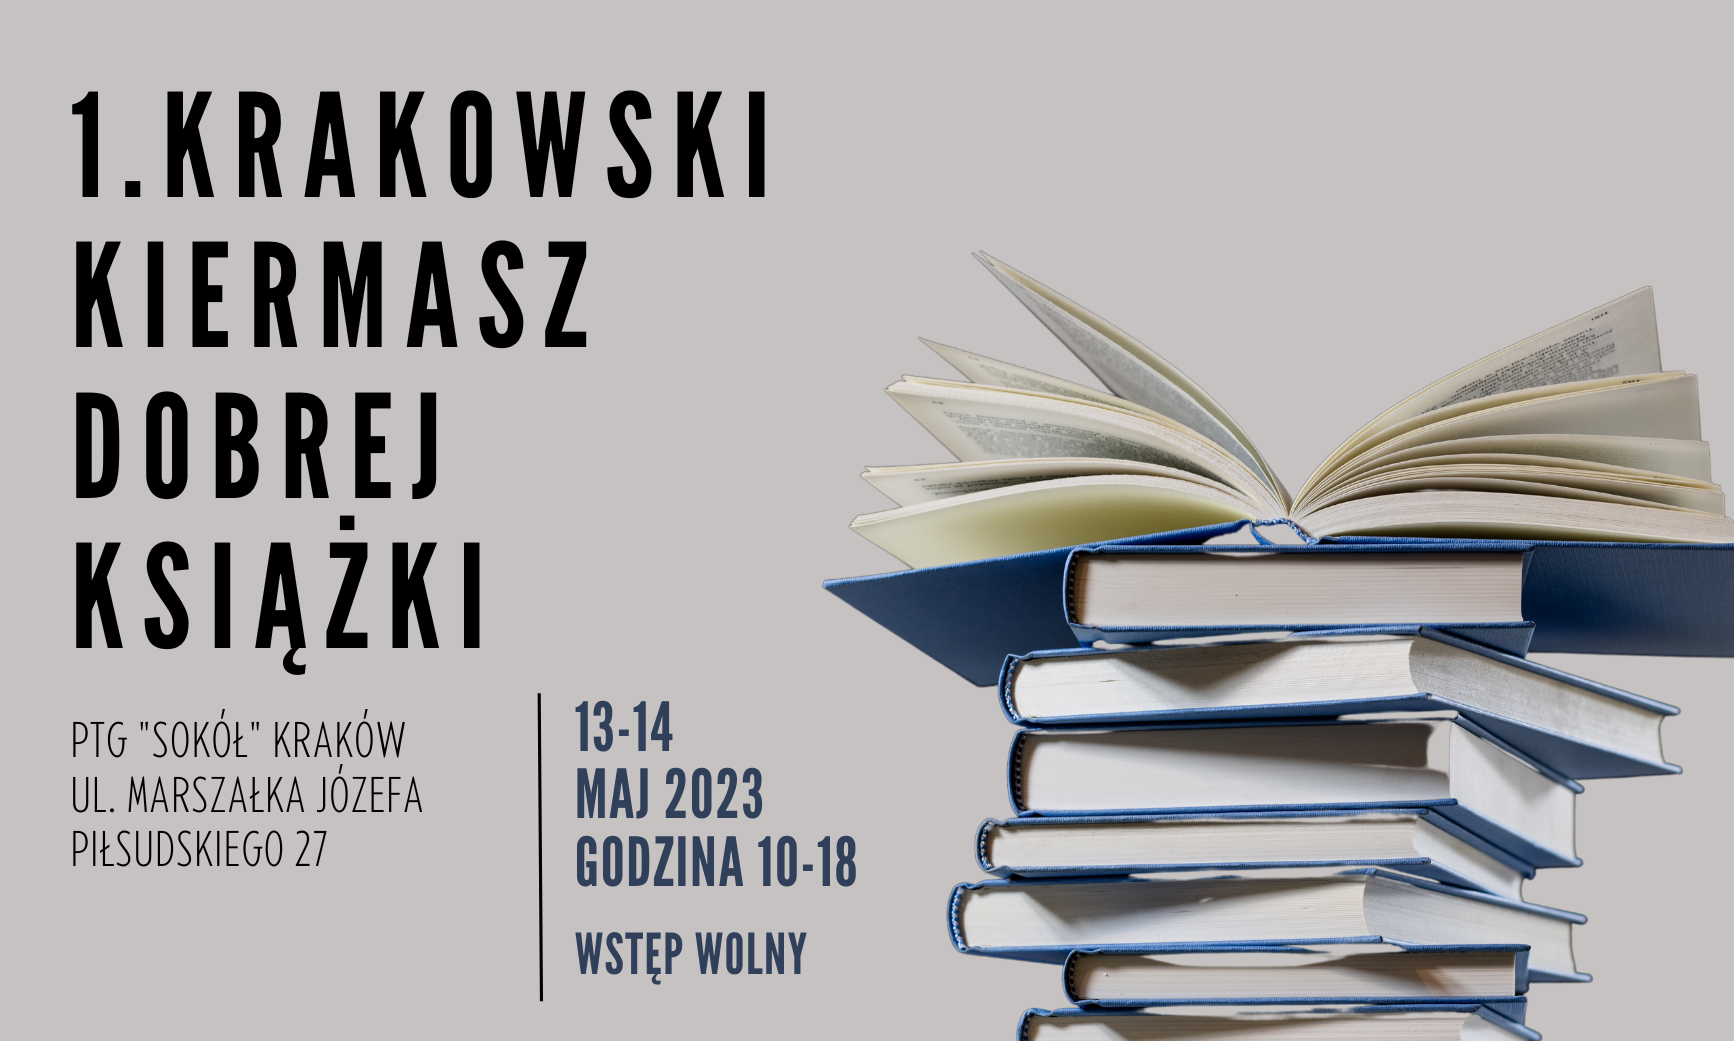 1. Krakowski Kiermasz Dobrej Książki - 13/14 maja 2023